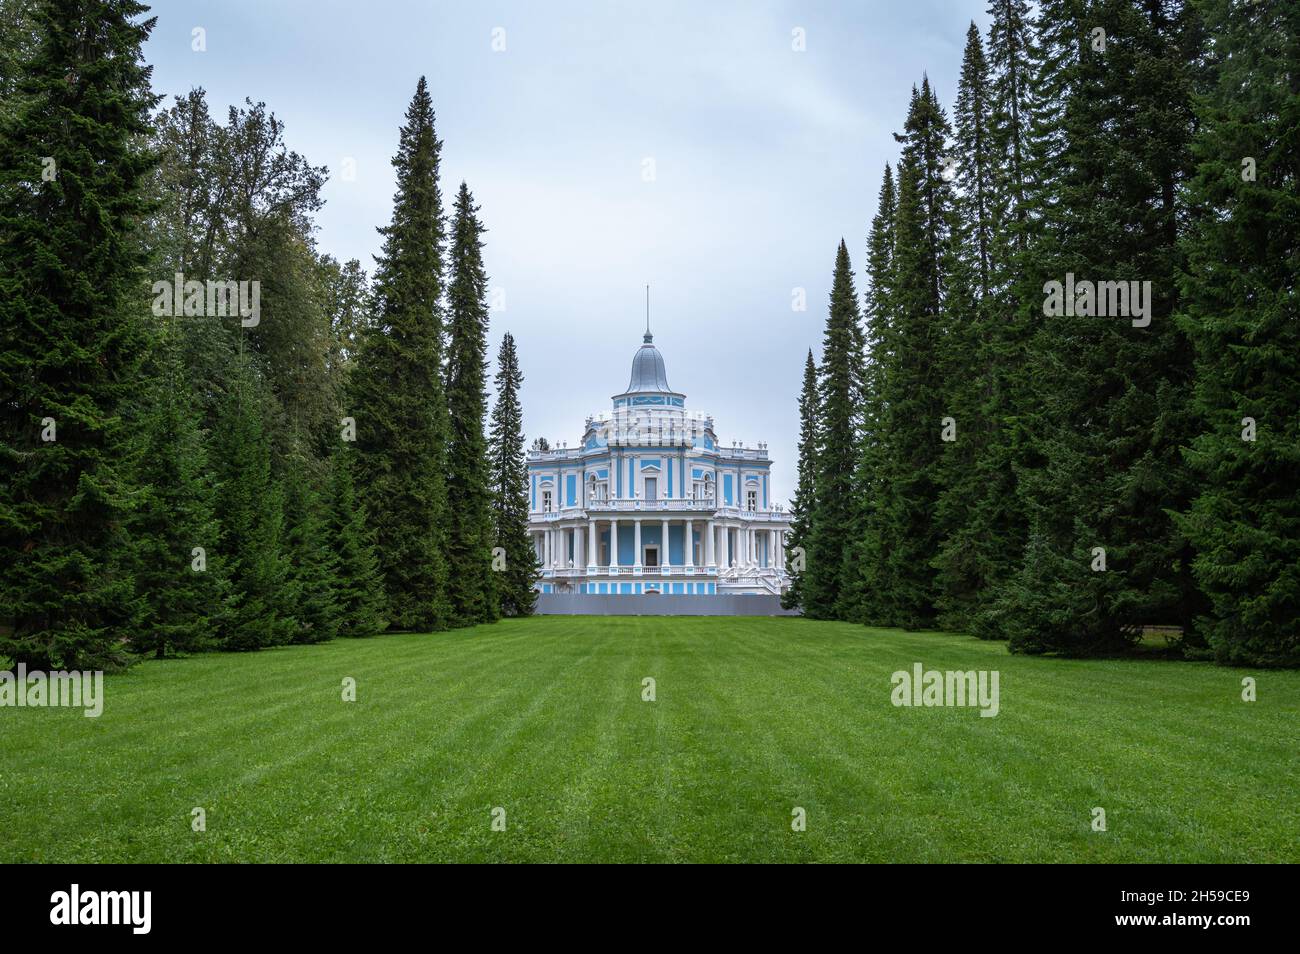 Rodel-Rutschbahn-Pavillon in der königlichen Residenz Oranienbaum. Lomonossow, Russland. Stockfoto